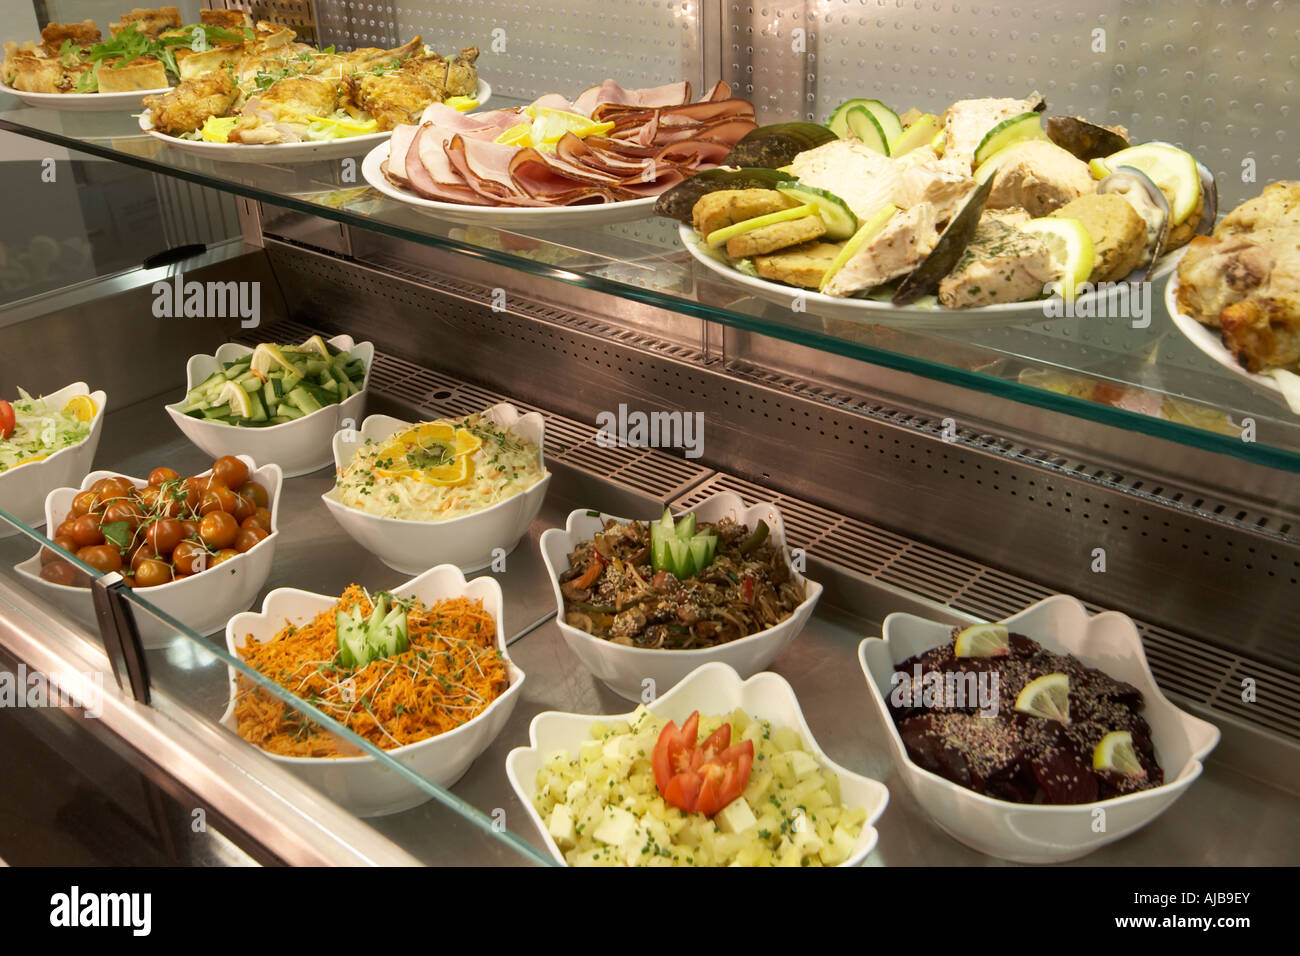 https://c8.alamy.com/compes/ajb9ey/cantina-comida-en-forma-de-buffet-con-platos-blancos-en-acero-inoxidable-mostrador-de-autoservicio-ajb9ey.jpg